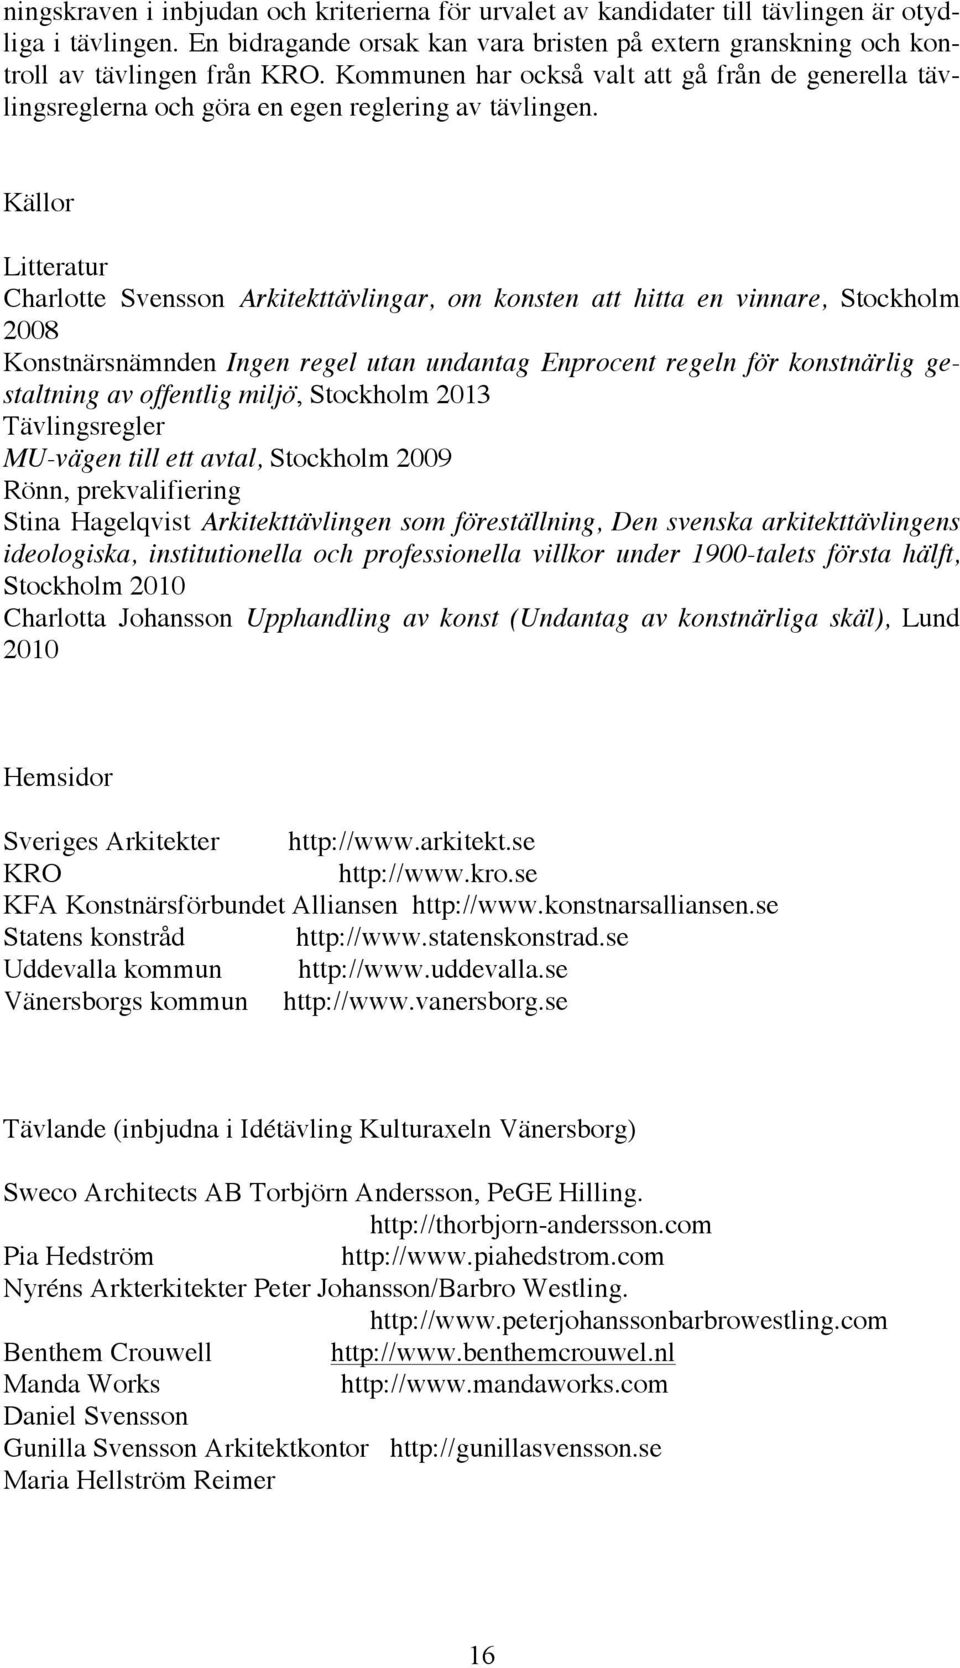 Källor Litteratur Charlotte Svensson Arkitekttävlingar, om konsten att hitta en vinnare, Stockholm 2008 Konstnärsnämnden Ingen regel utan undantag Enprocent regeln för konstnärlig gestaltning av